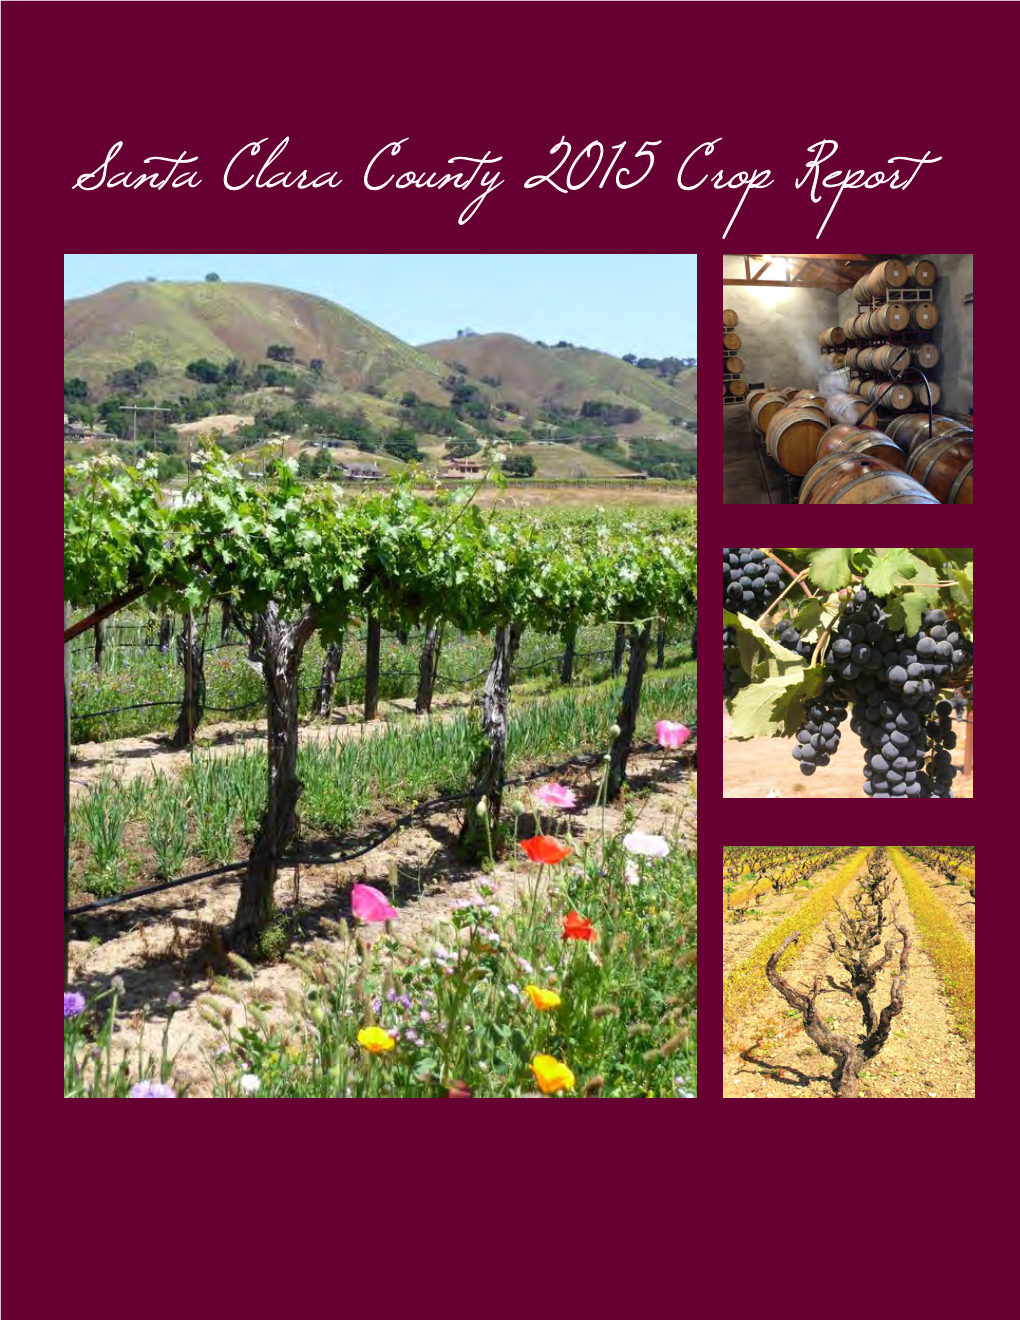 Santa Clara County 2015 Crop Report